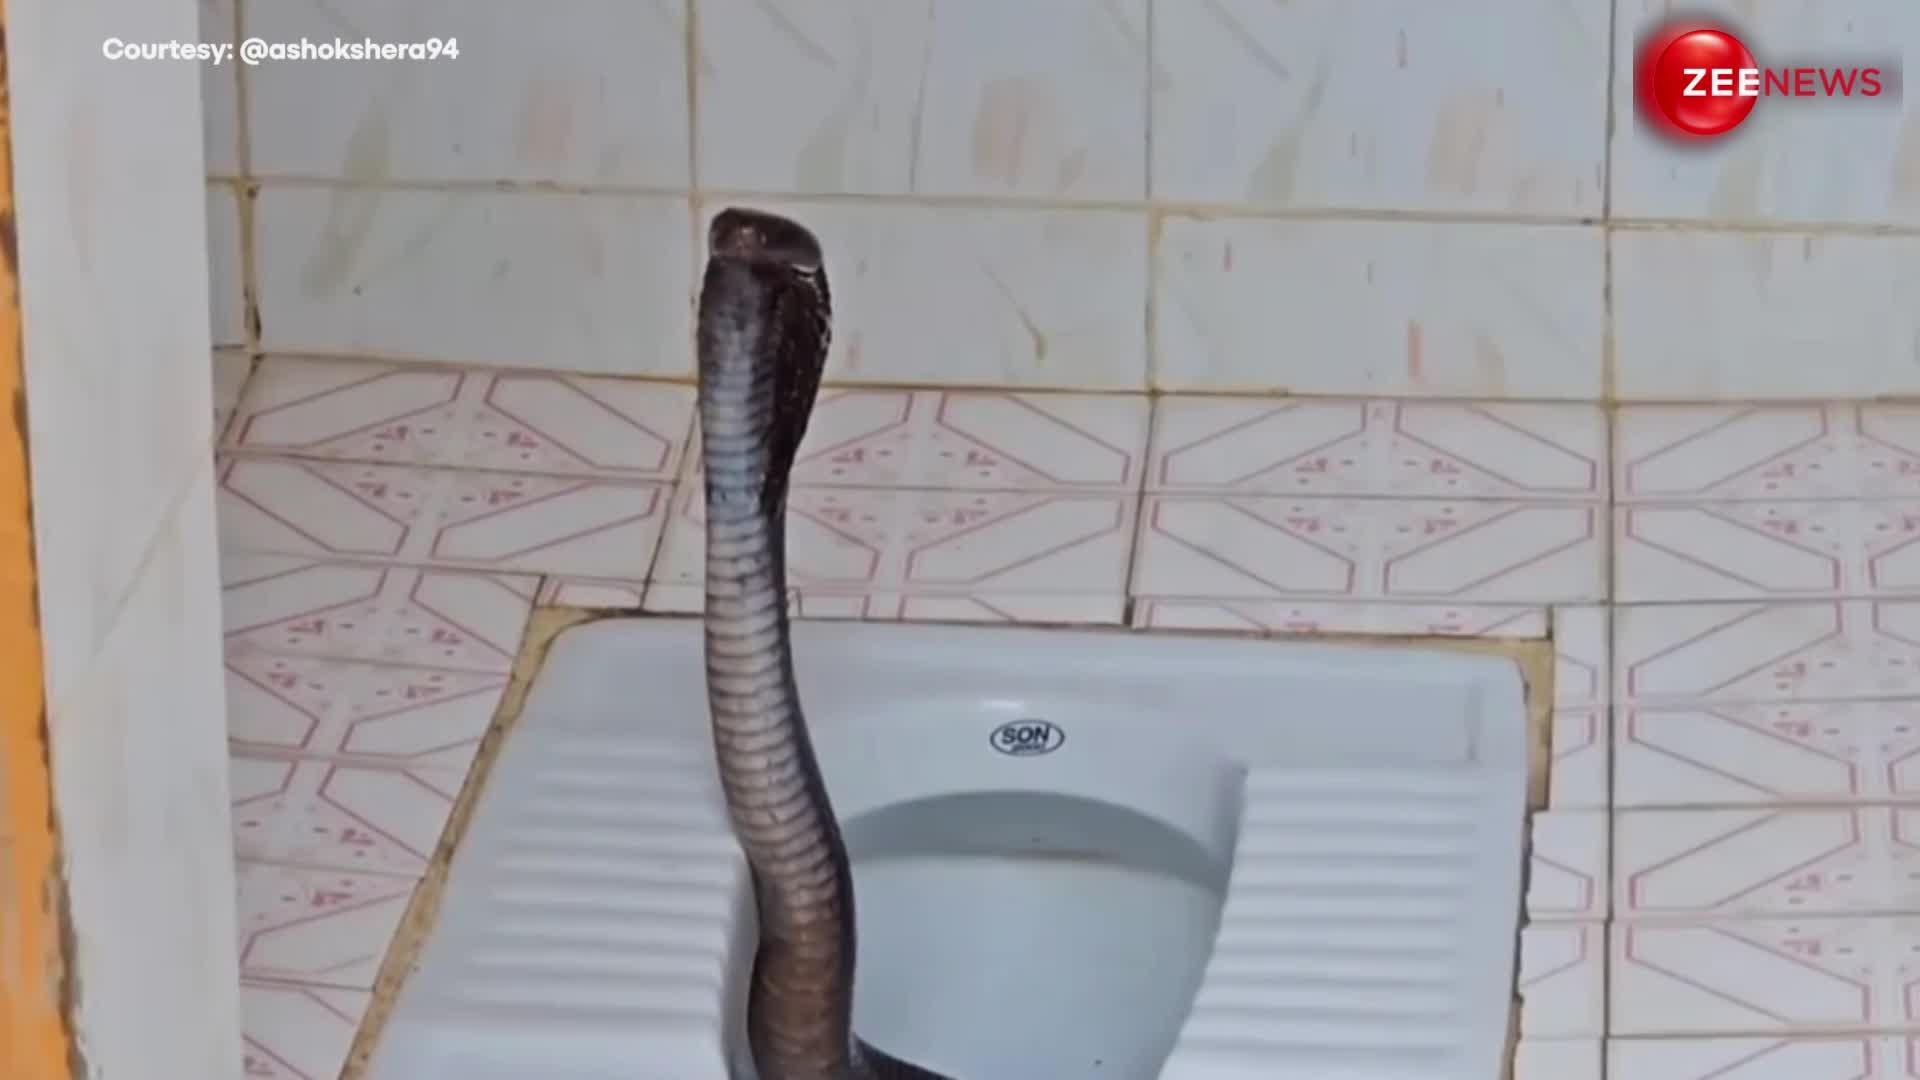 King Cobra: इंडियन टॉयलेट के अंदर से धड़ उठाए निकला पड़ा था किंग कोबरा, ऐसा नजारा देखते ही थम गई लोगों की सांसें